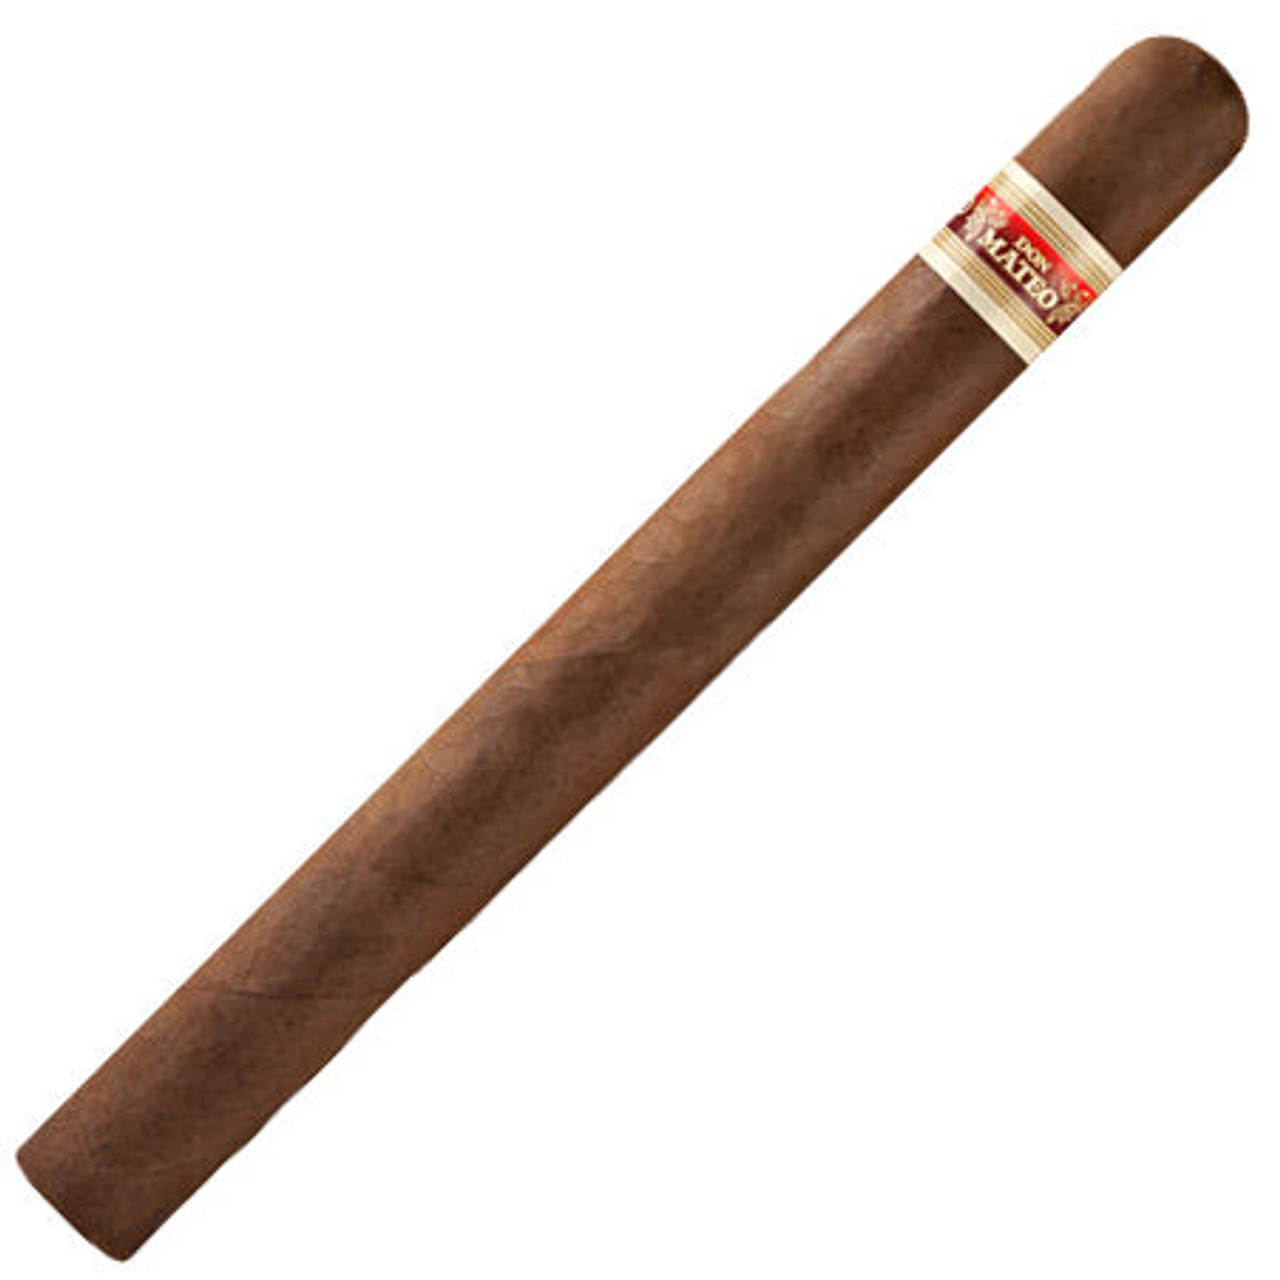 Don Mateo No. 10 Cigars - 8 x 52 Single